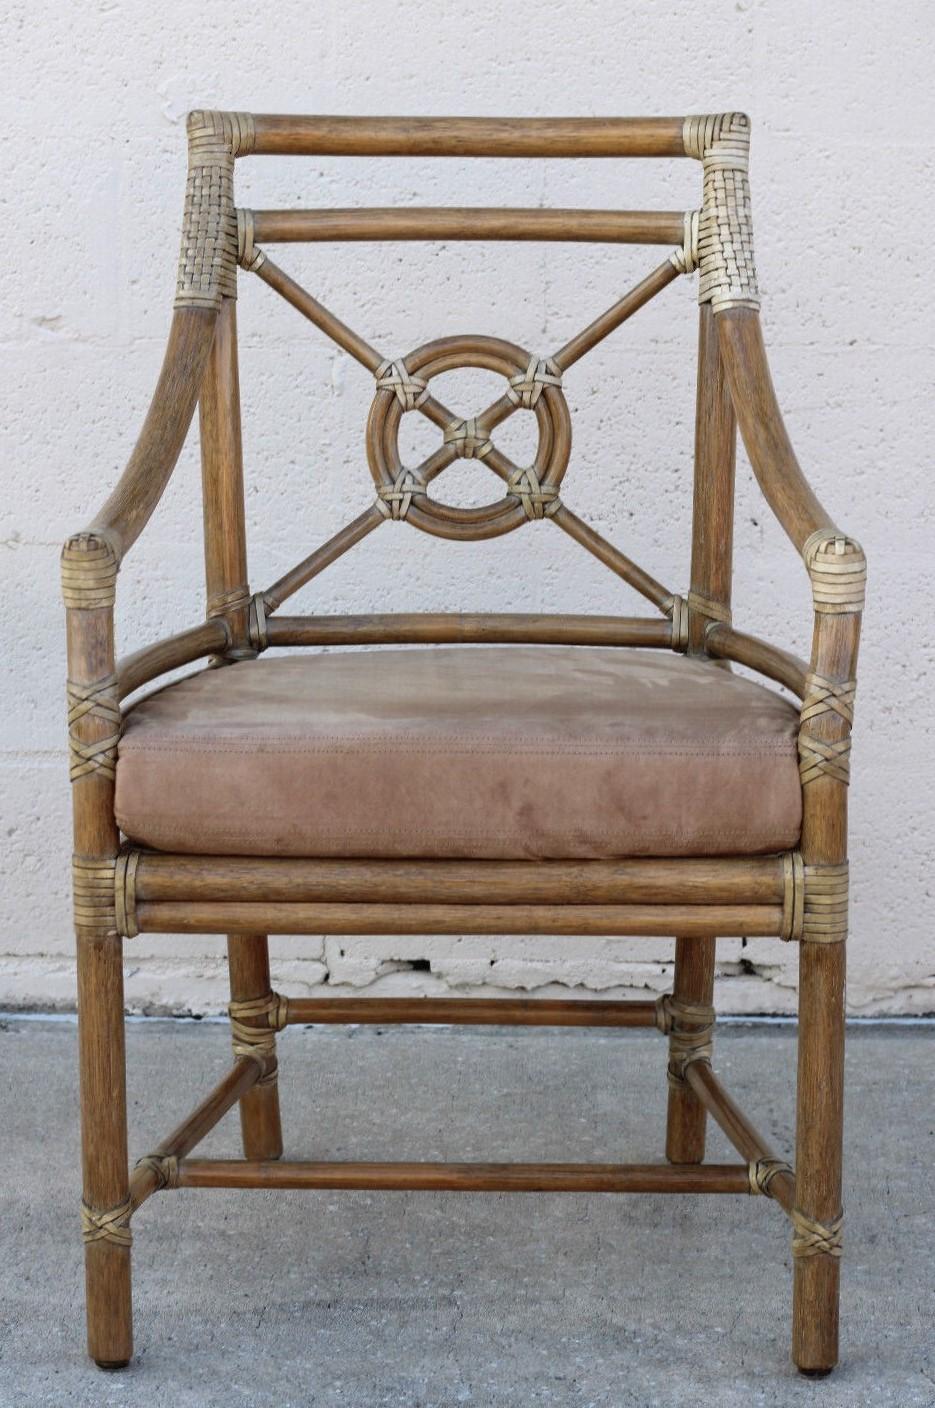 Ein Paar Rattansessel oder Esszimmerstühle, entworfen von der bahnbrechenden Innovatorin Elinor McGuire im Stil der kalifornischen organischen Moderne. Diese tadellos gefertigten Stühle haben eine offene Rattan-Rückenlehne, die das ikonische